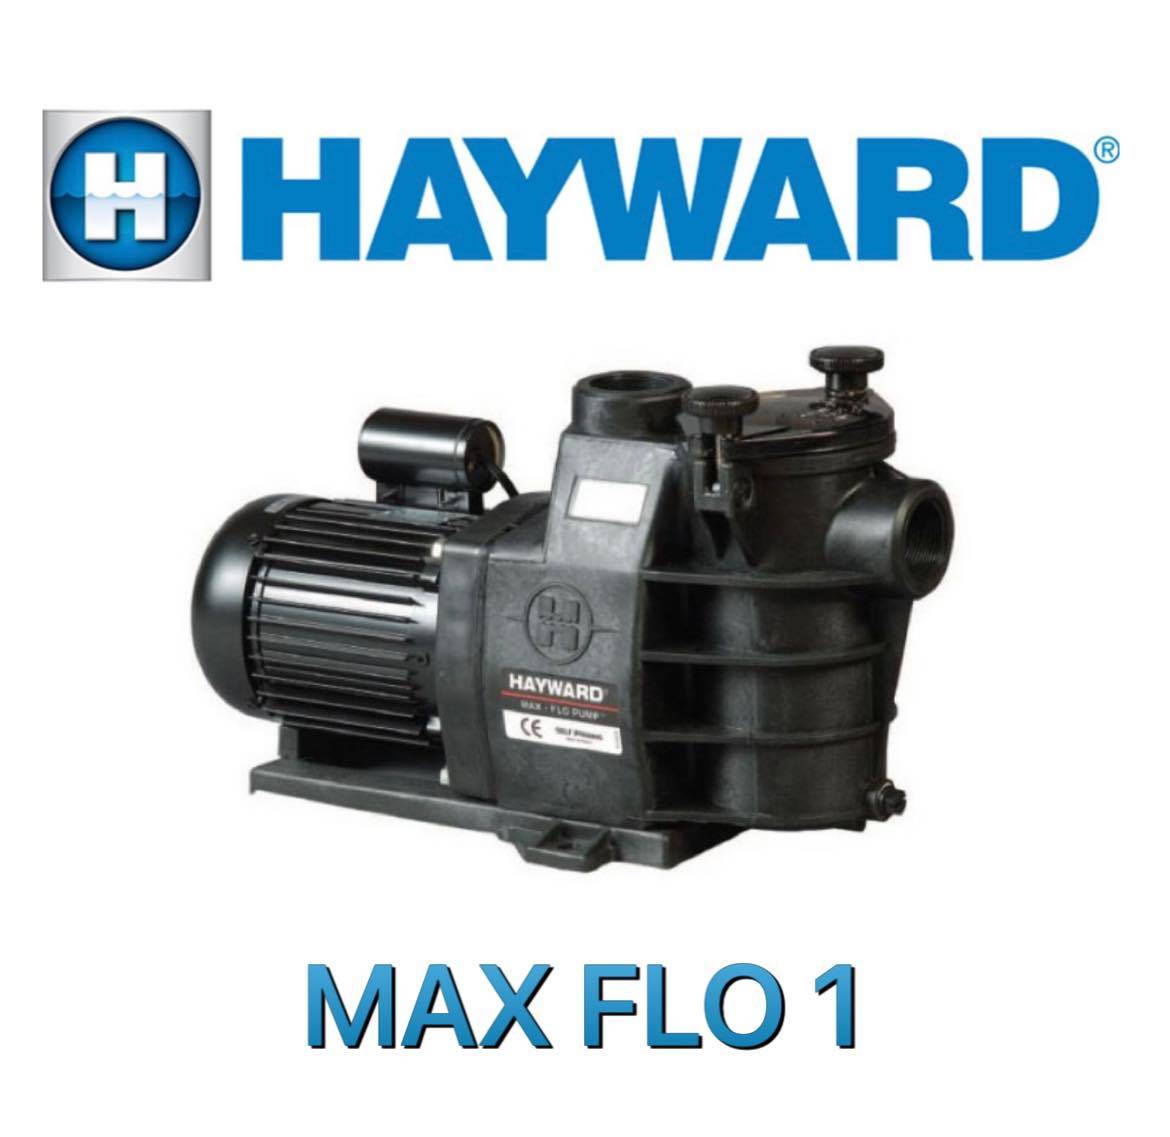 pompe hayward max flo 2 FERRE PISCINES MARSEILLE